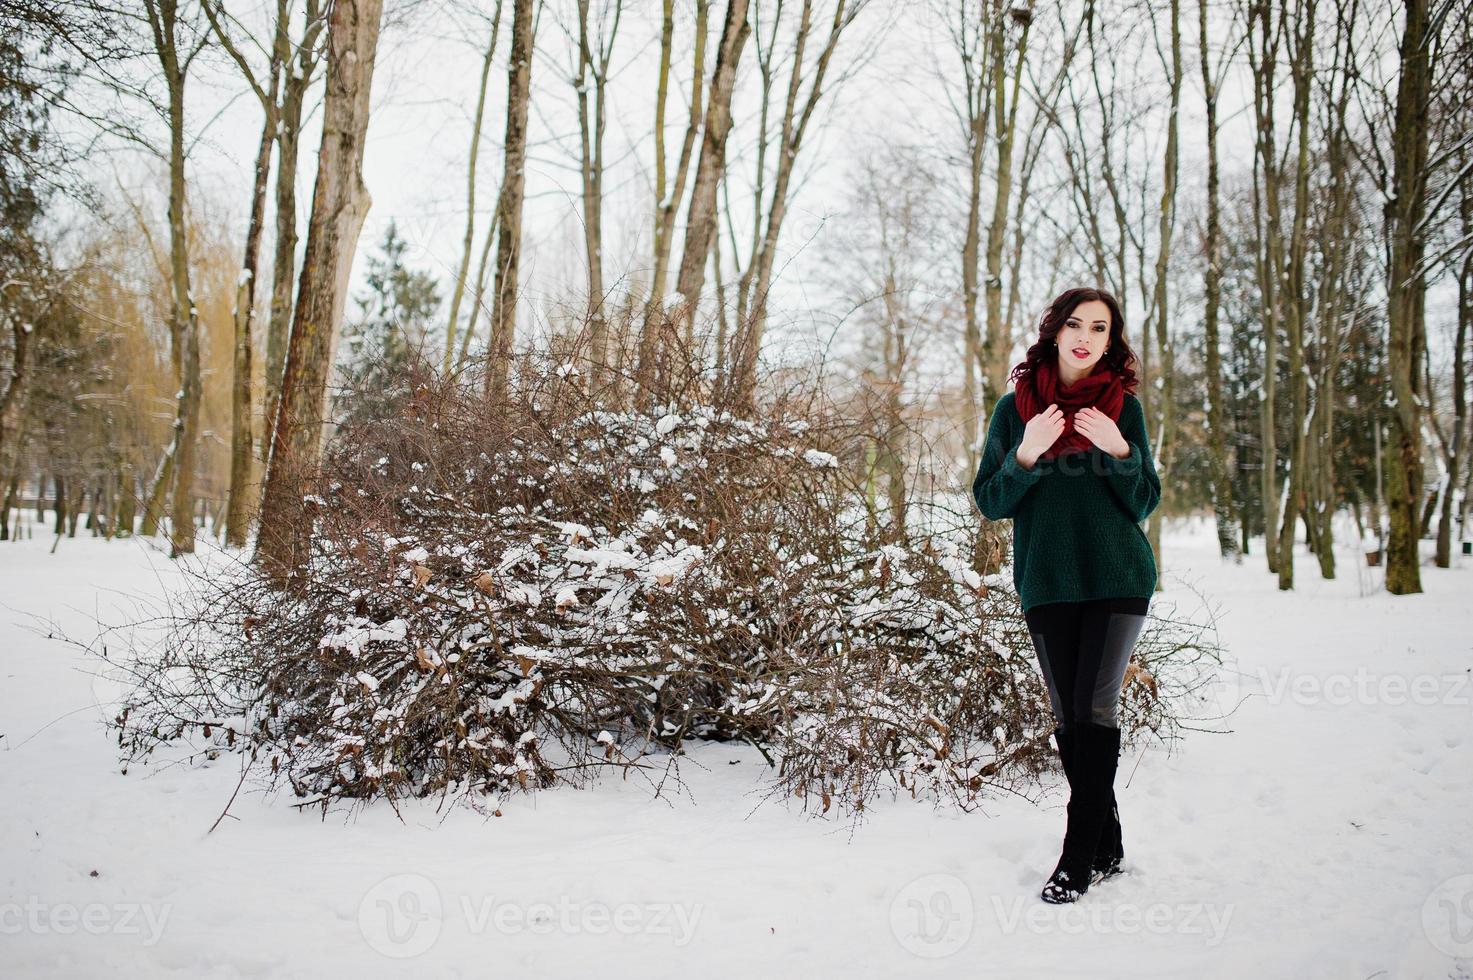 chica morena en suéter verde y bufanda roja al aire libre en el día de invierno por la noche. foto